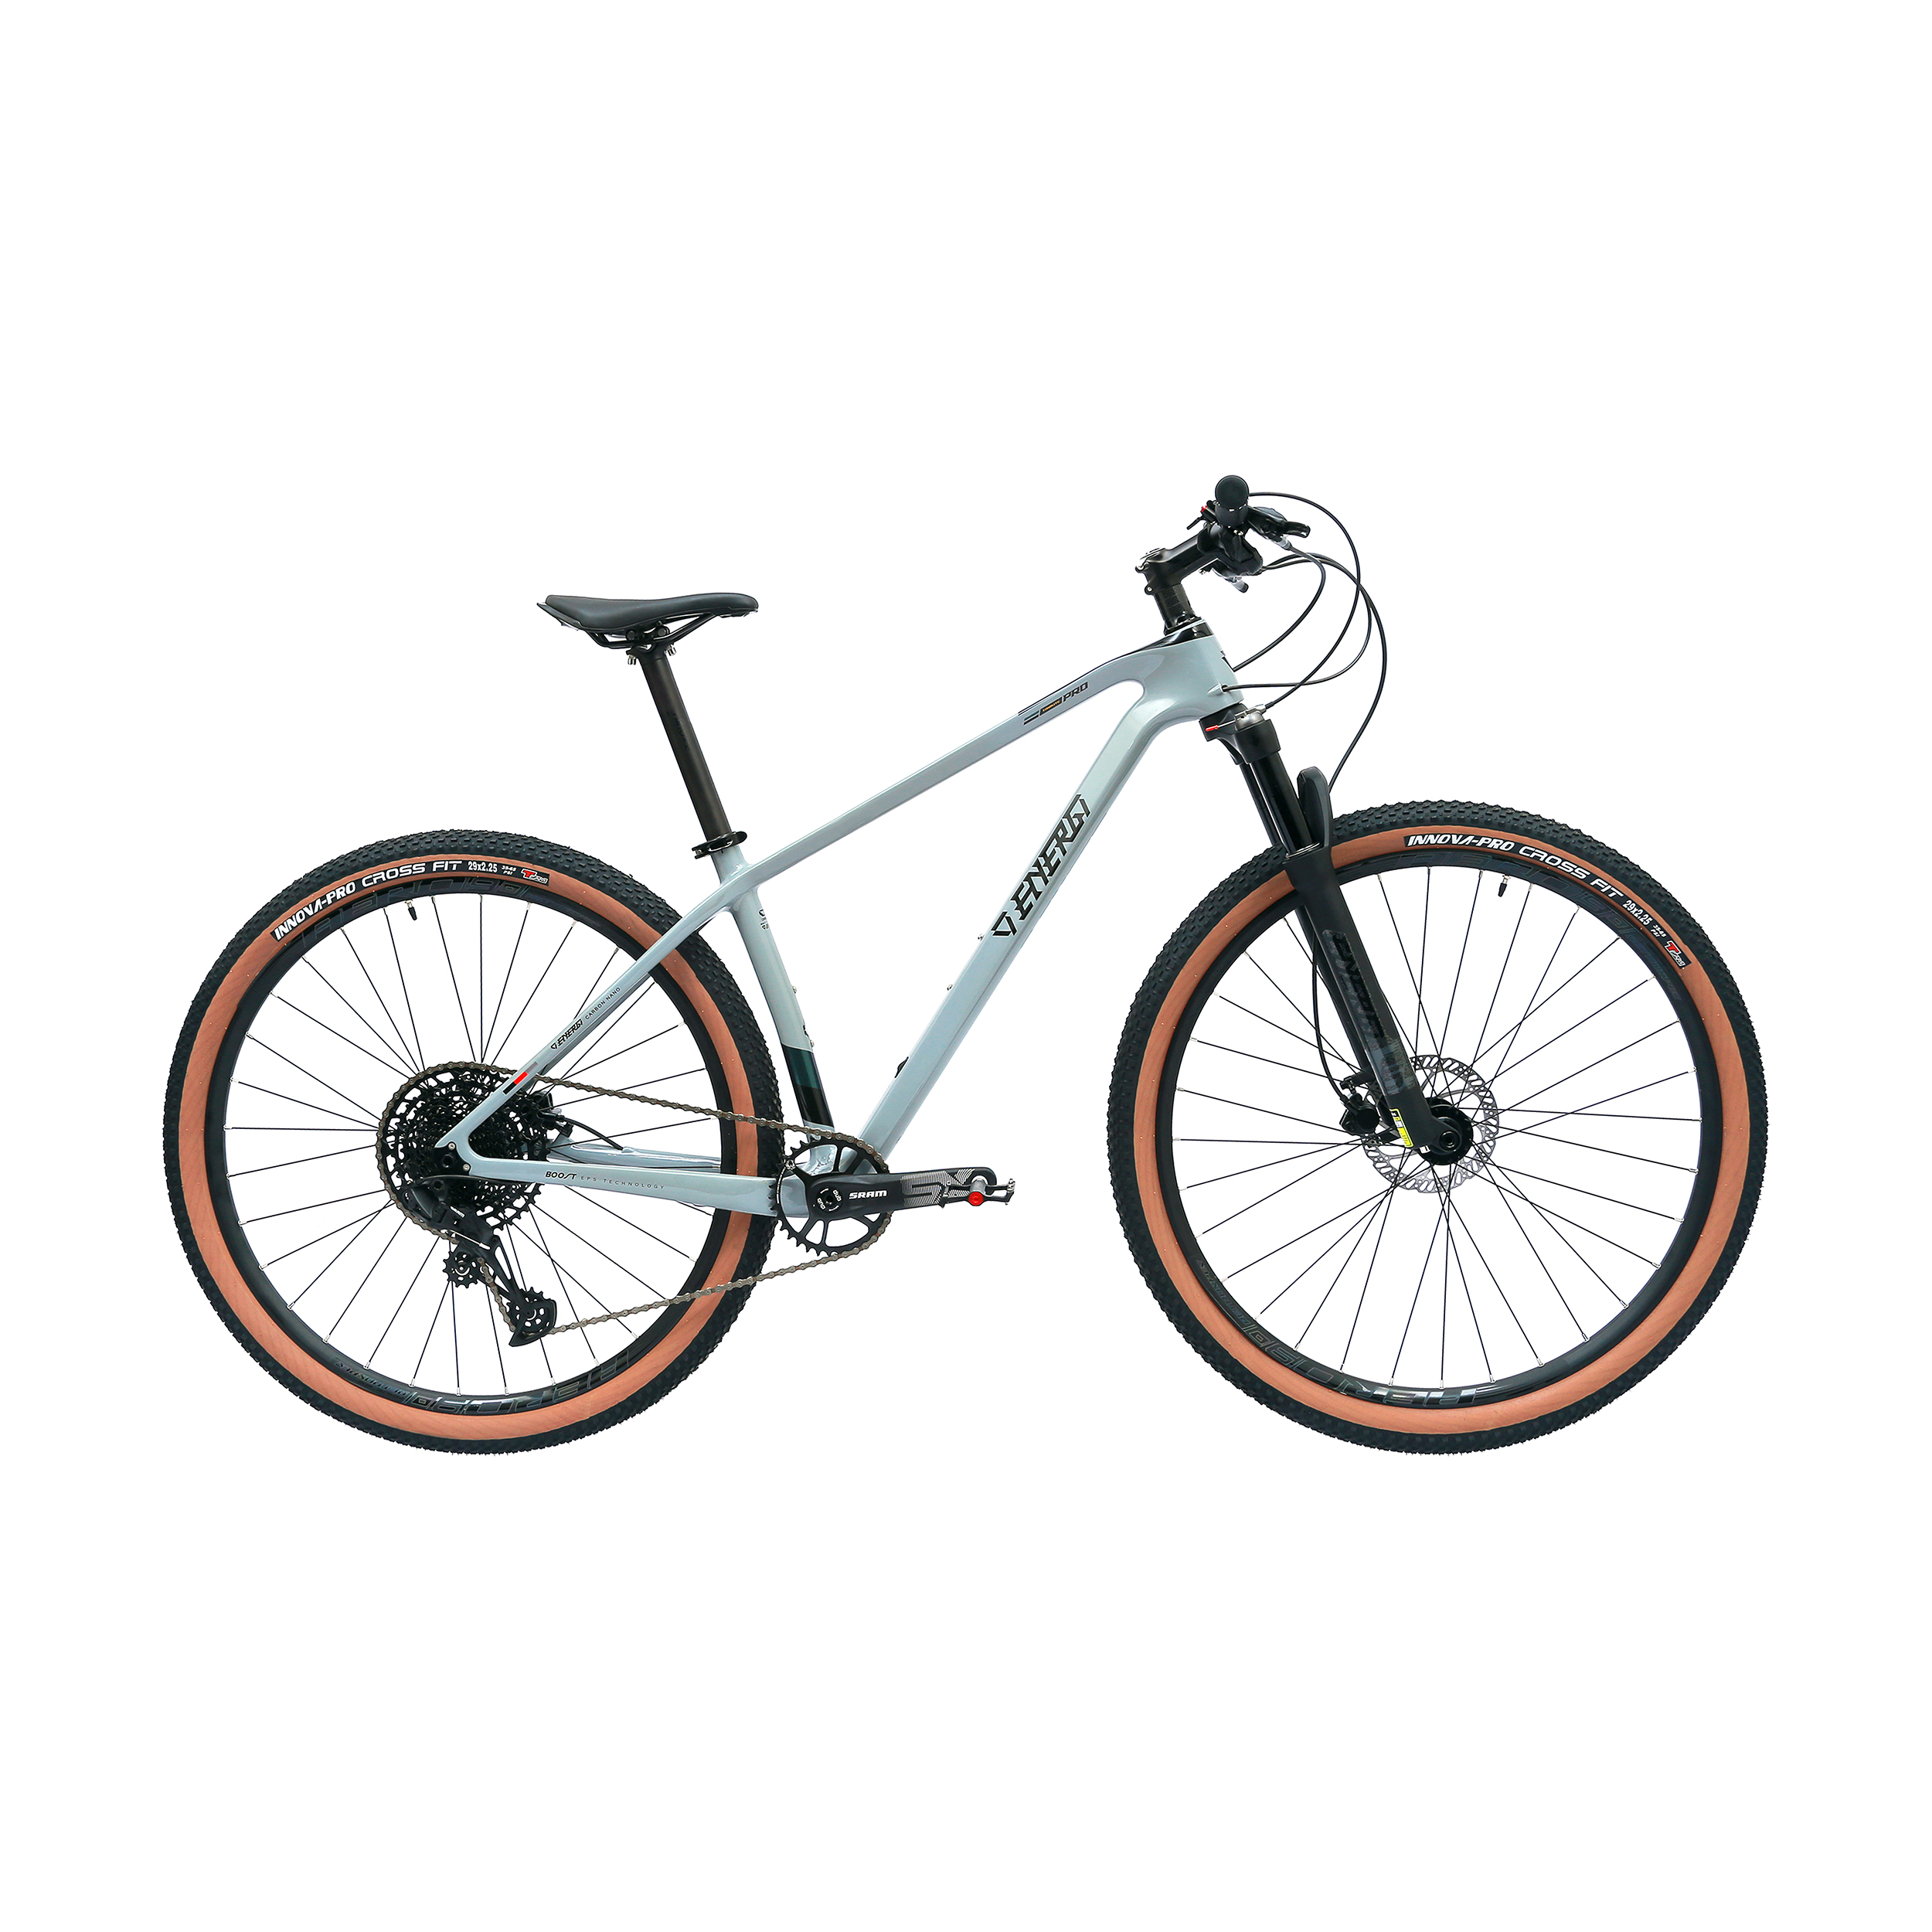 دوچرخه کوهستان انرژی مدل tribute 2021 کد 02 سایز 17